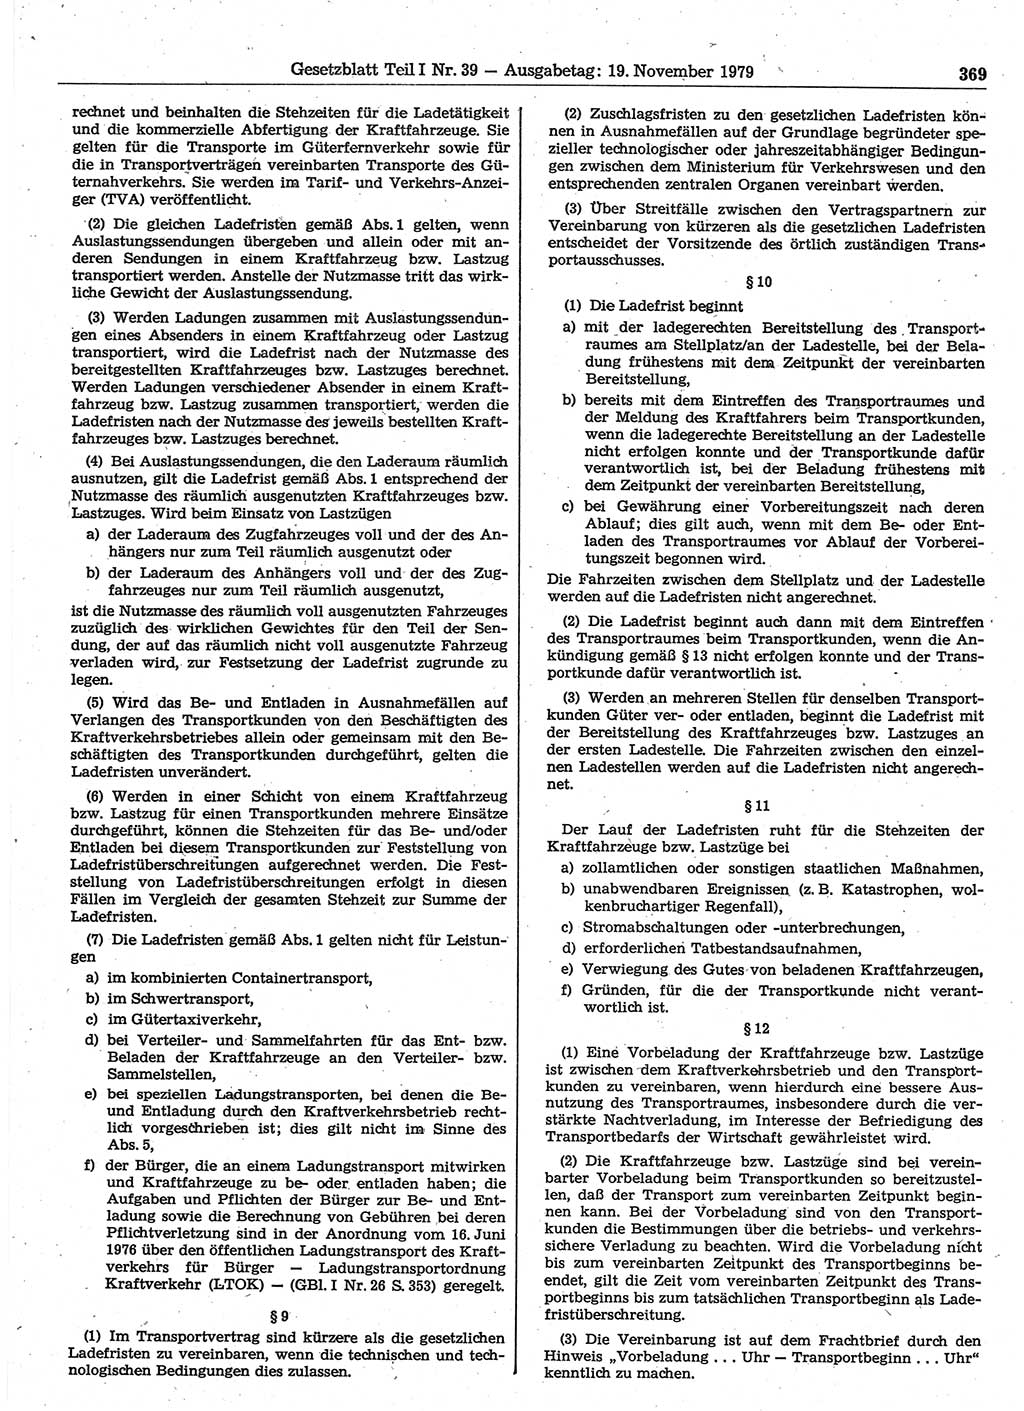 Gesetzblatt (GBl.) der Deutschen Demokratischen Republik (DDR) Teil Ⅰ 1979, Seite 369 (GBl. DDR Ⅰ 1979, S. 369)